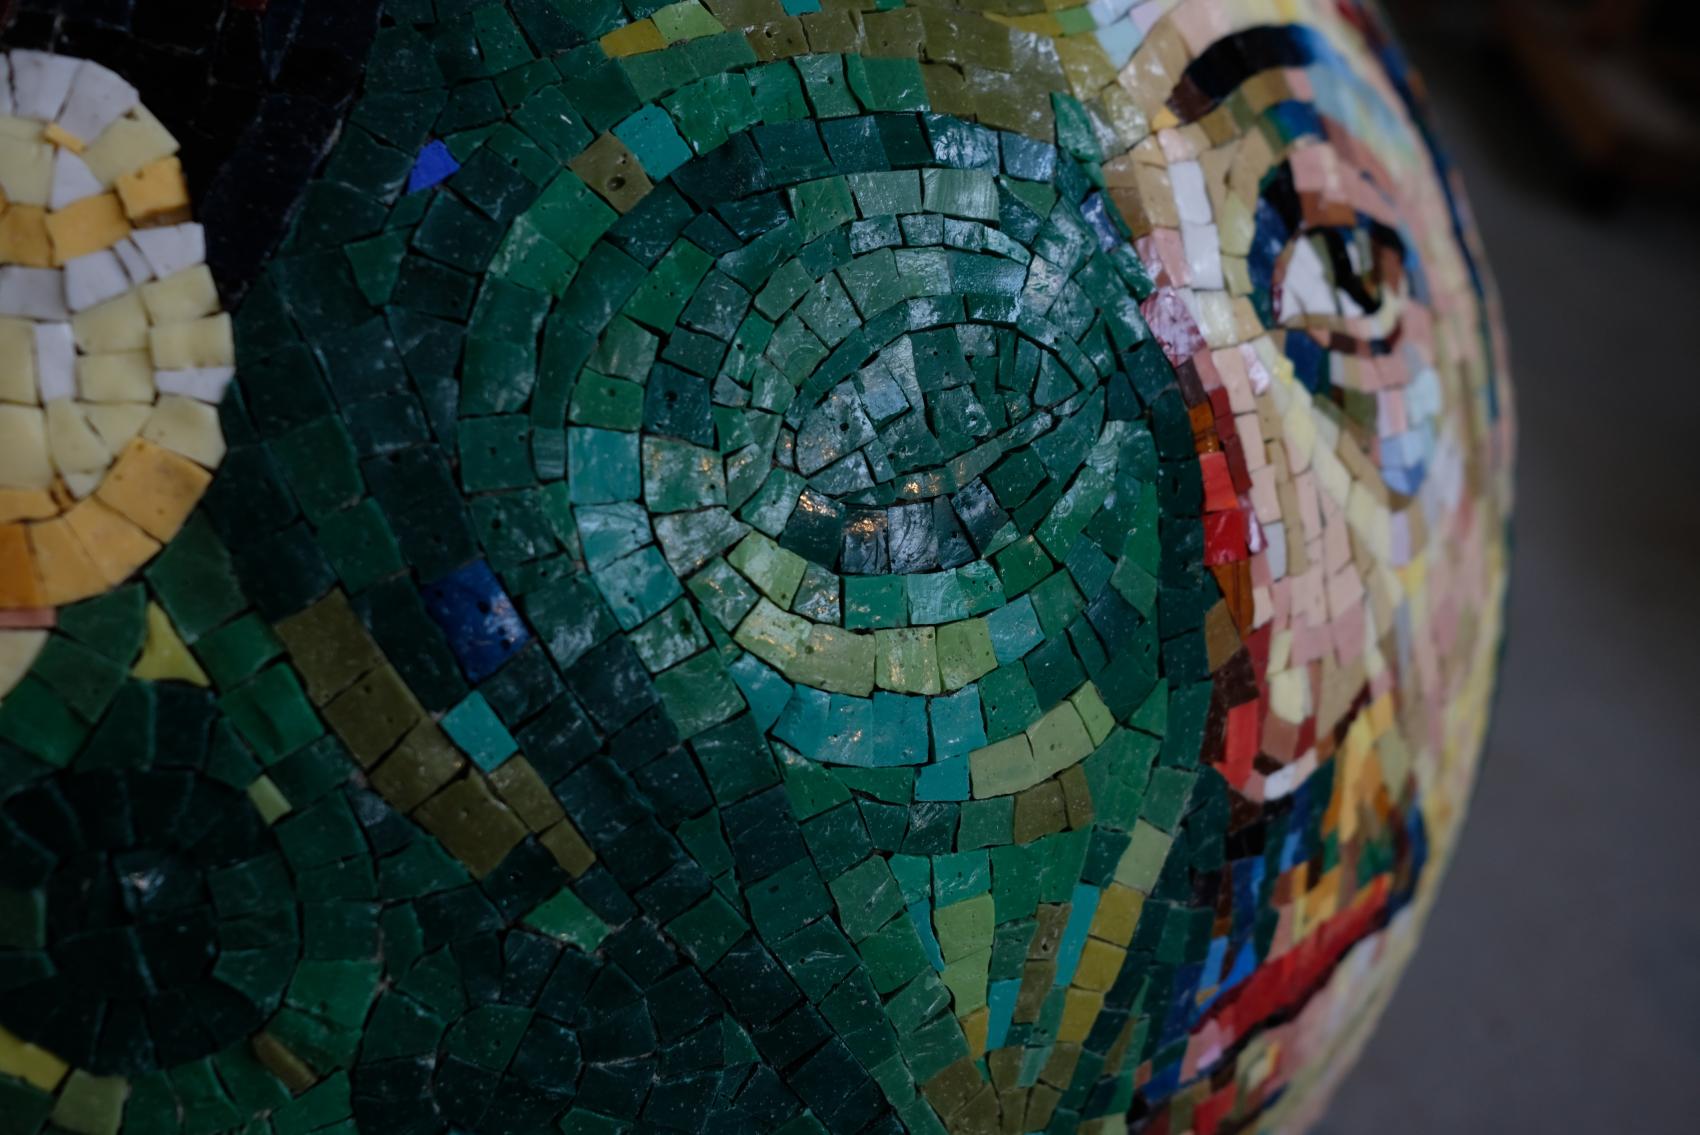 Dans les pas de Gauguin, mosaique, fauvisme, art contemporain, crÃ©ation mosaic art, jÃ©rÃ´me clochard